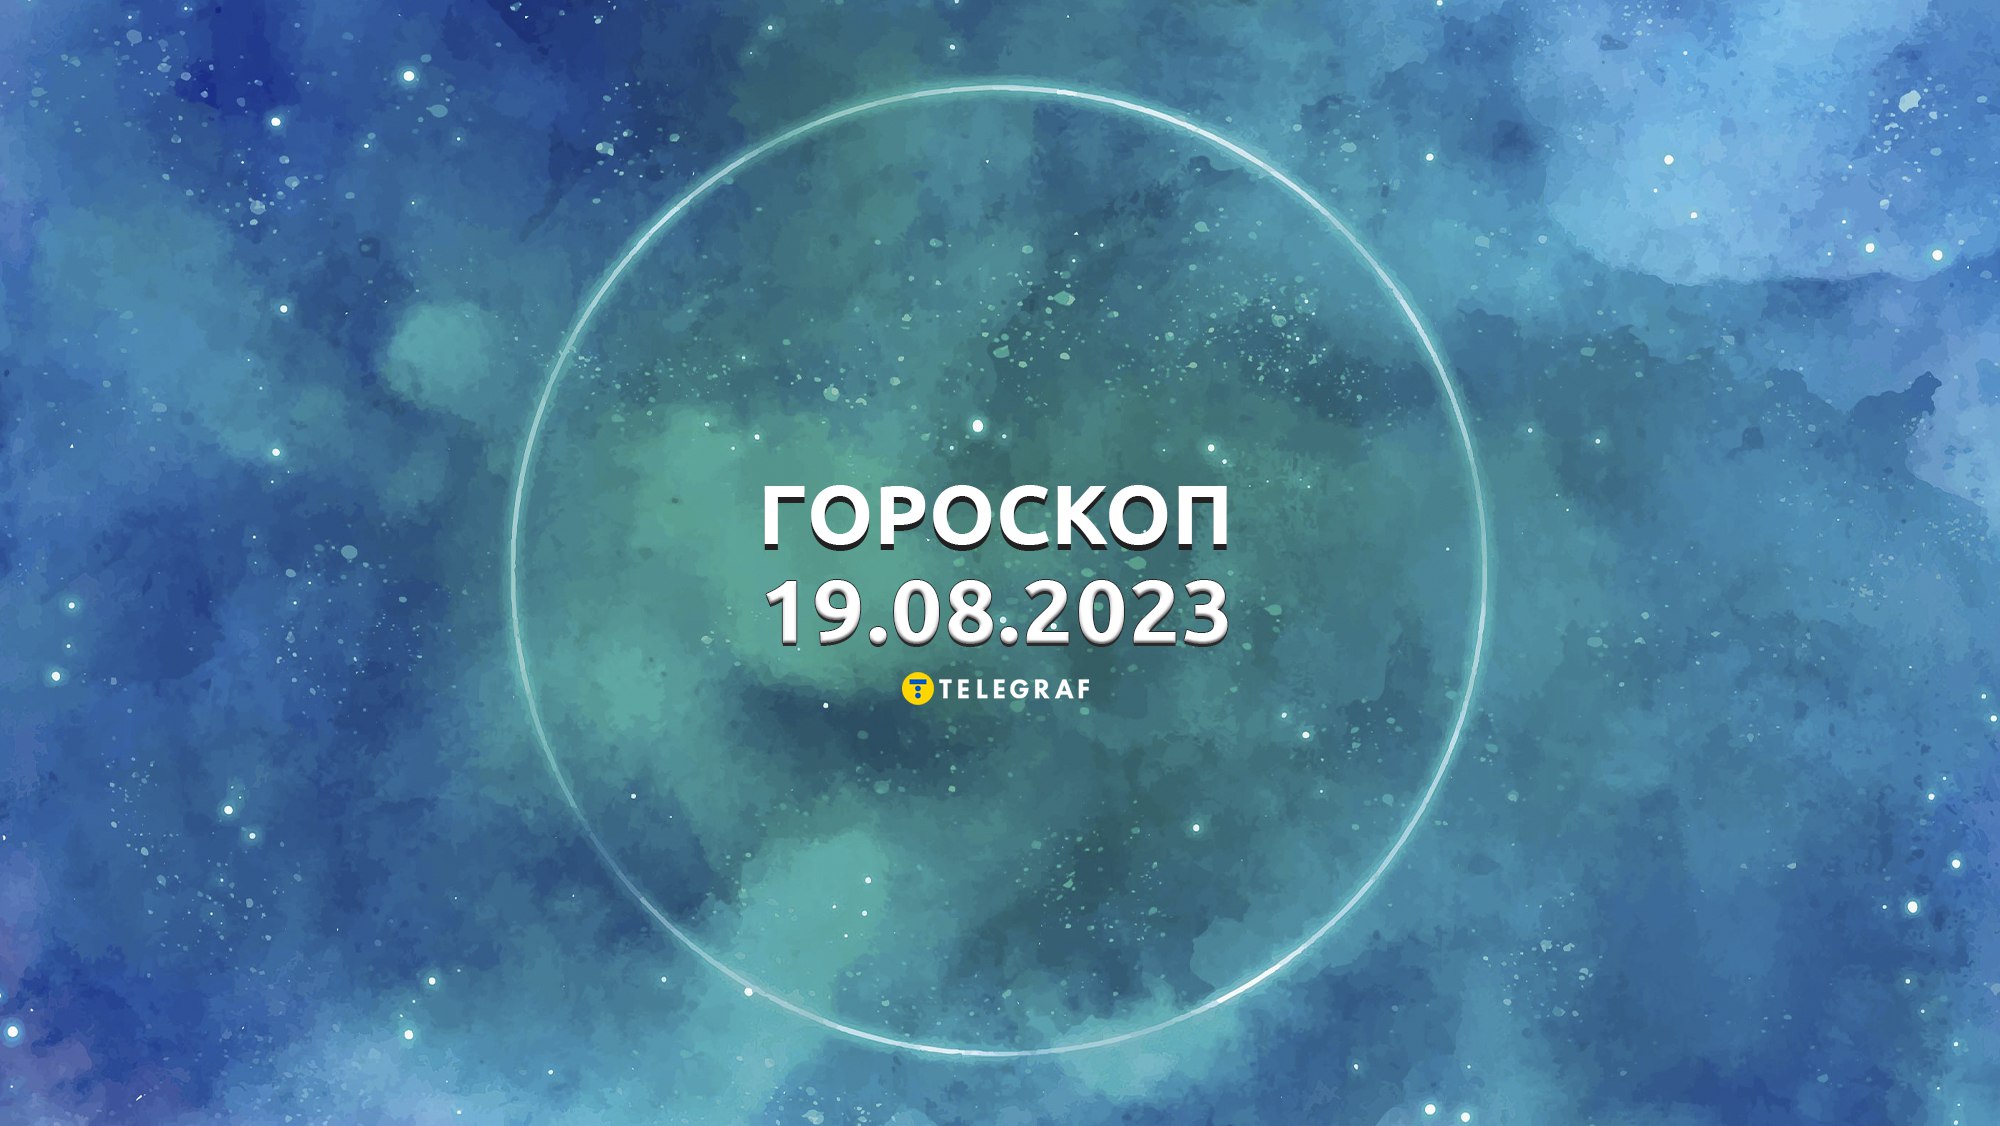 Гороскоп на 19 августа 2023 – прогноз на завтра для Весов, Скорпионов,Стрельцов и других знаков Зодиака - Телеграф